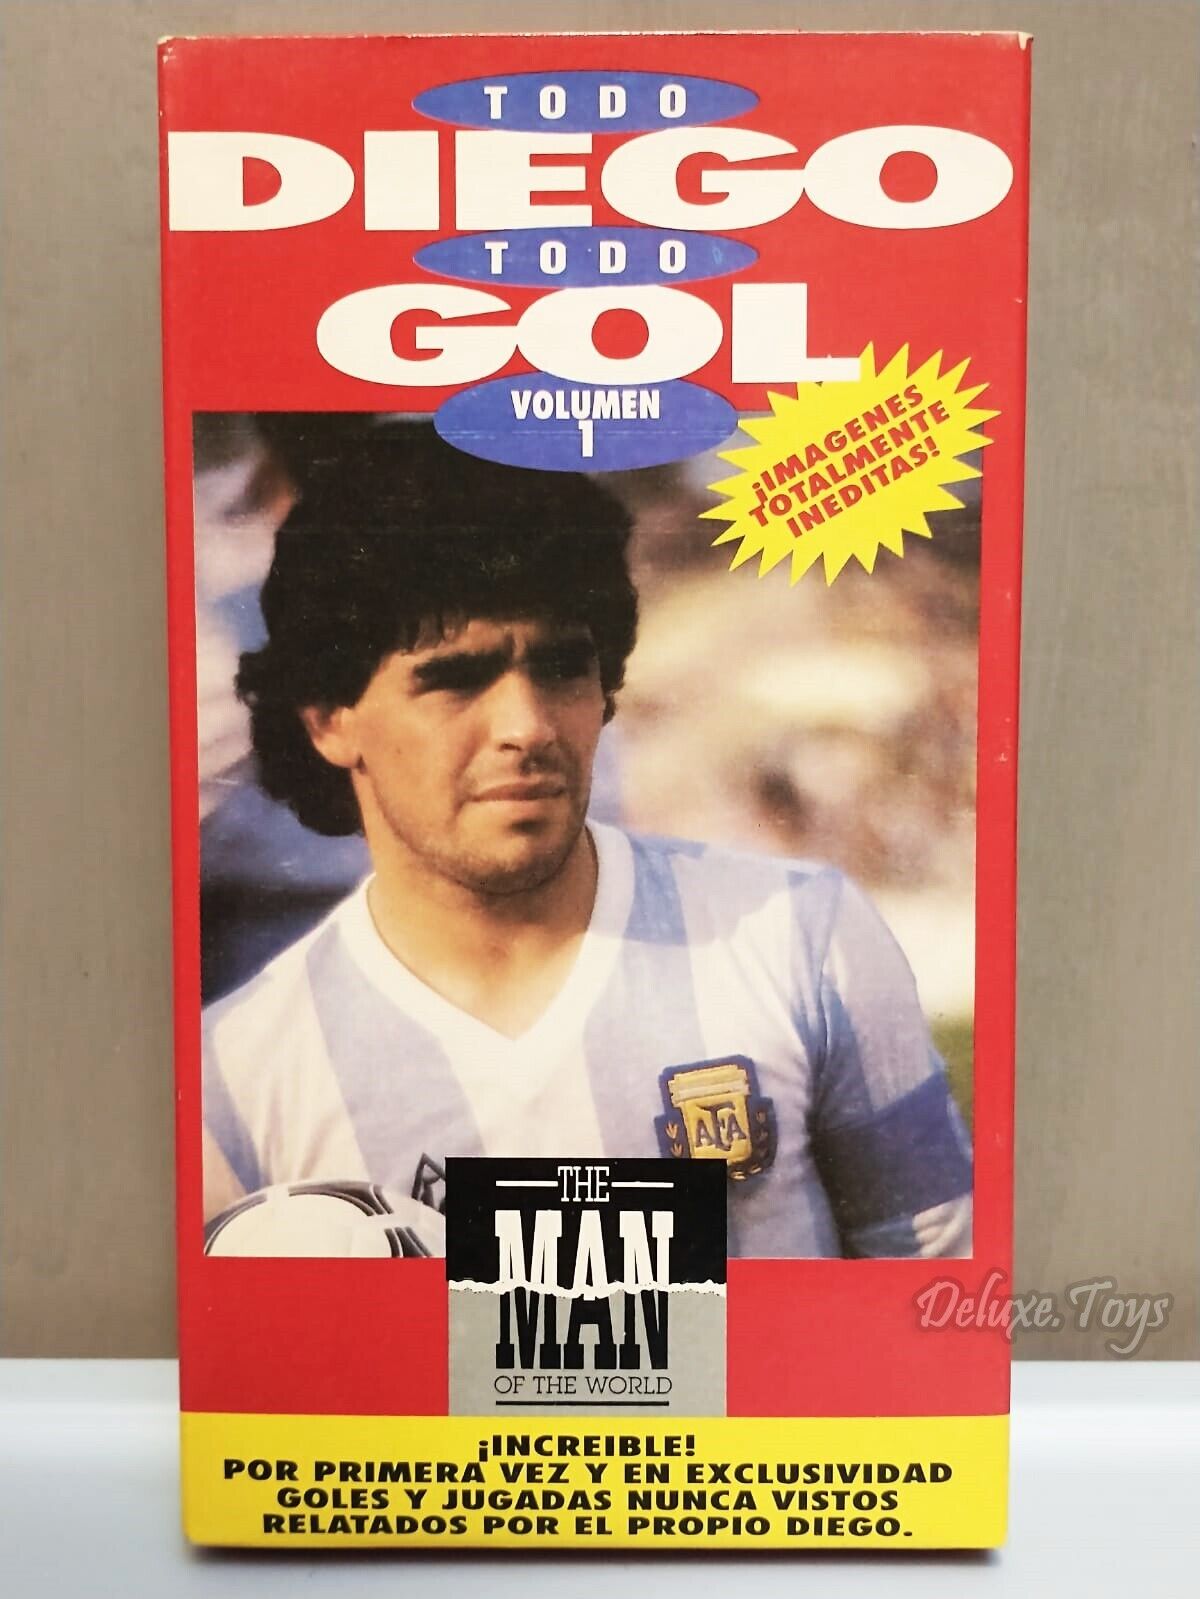 Diego Maradona soccer VHS Video Tape - Very Rare